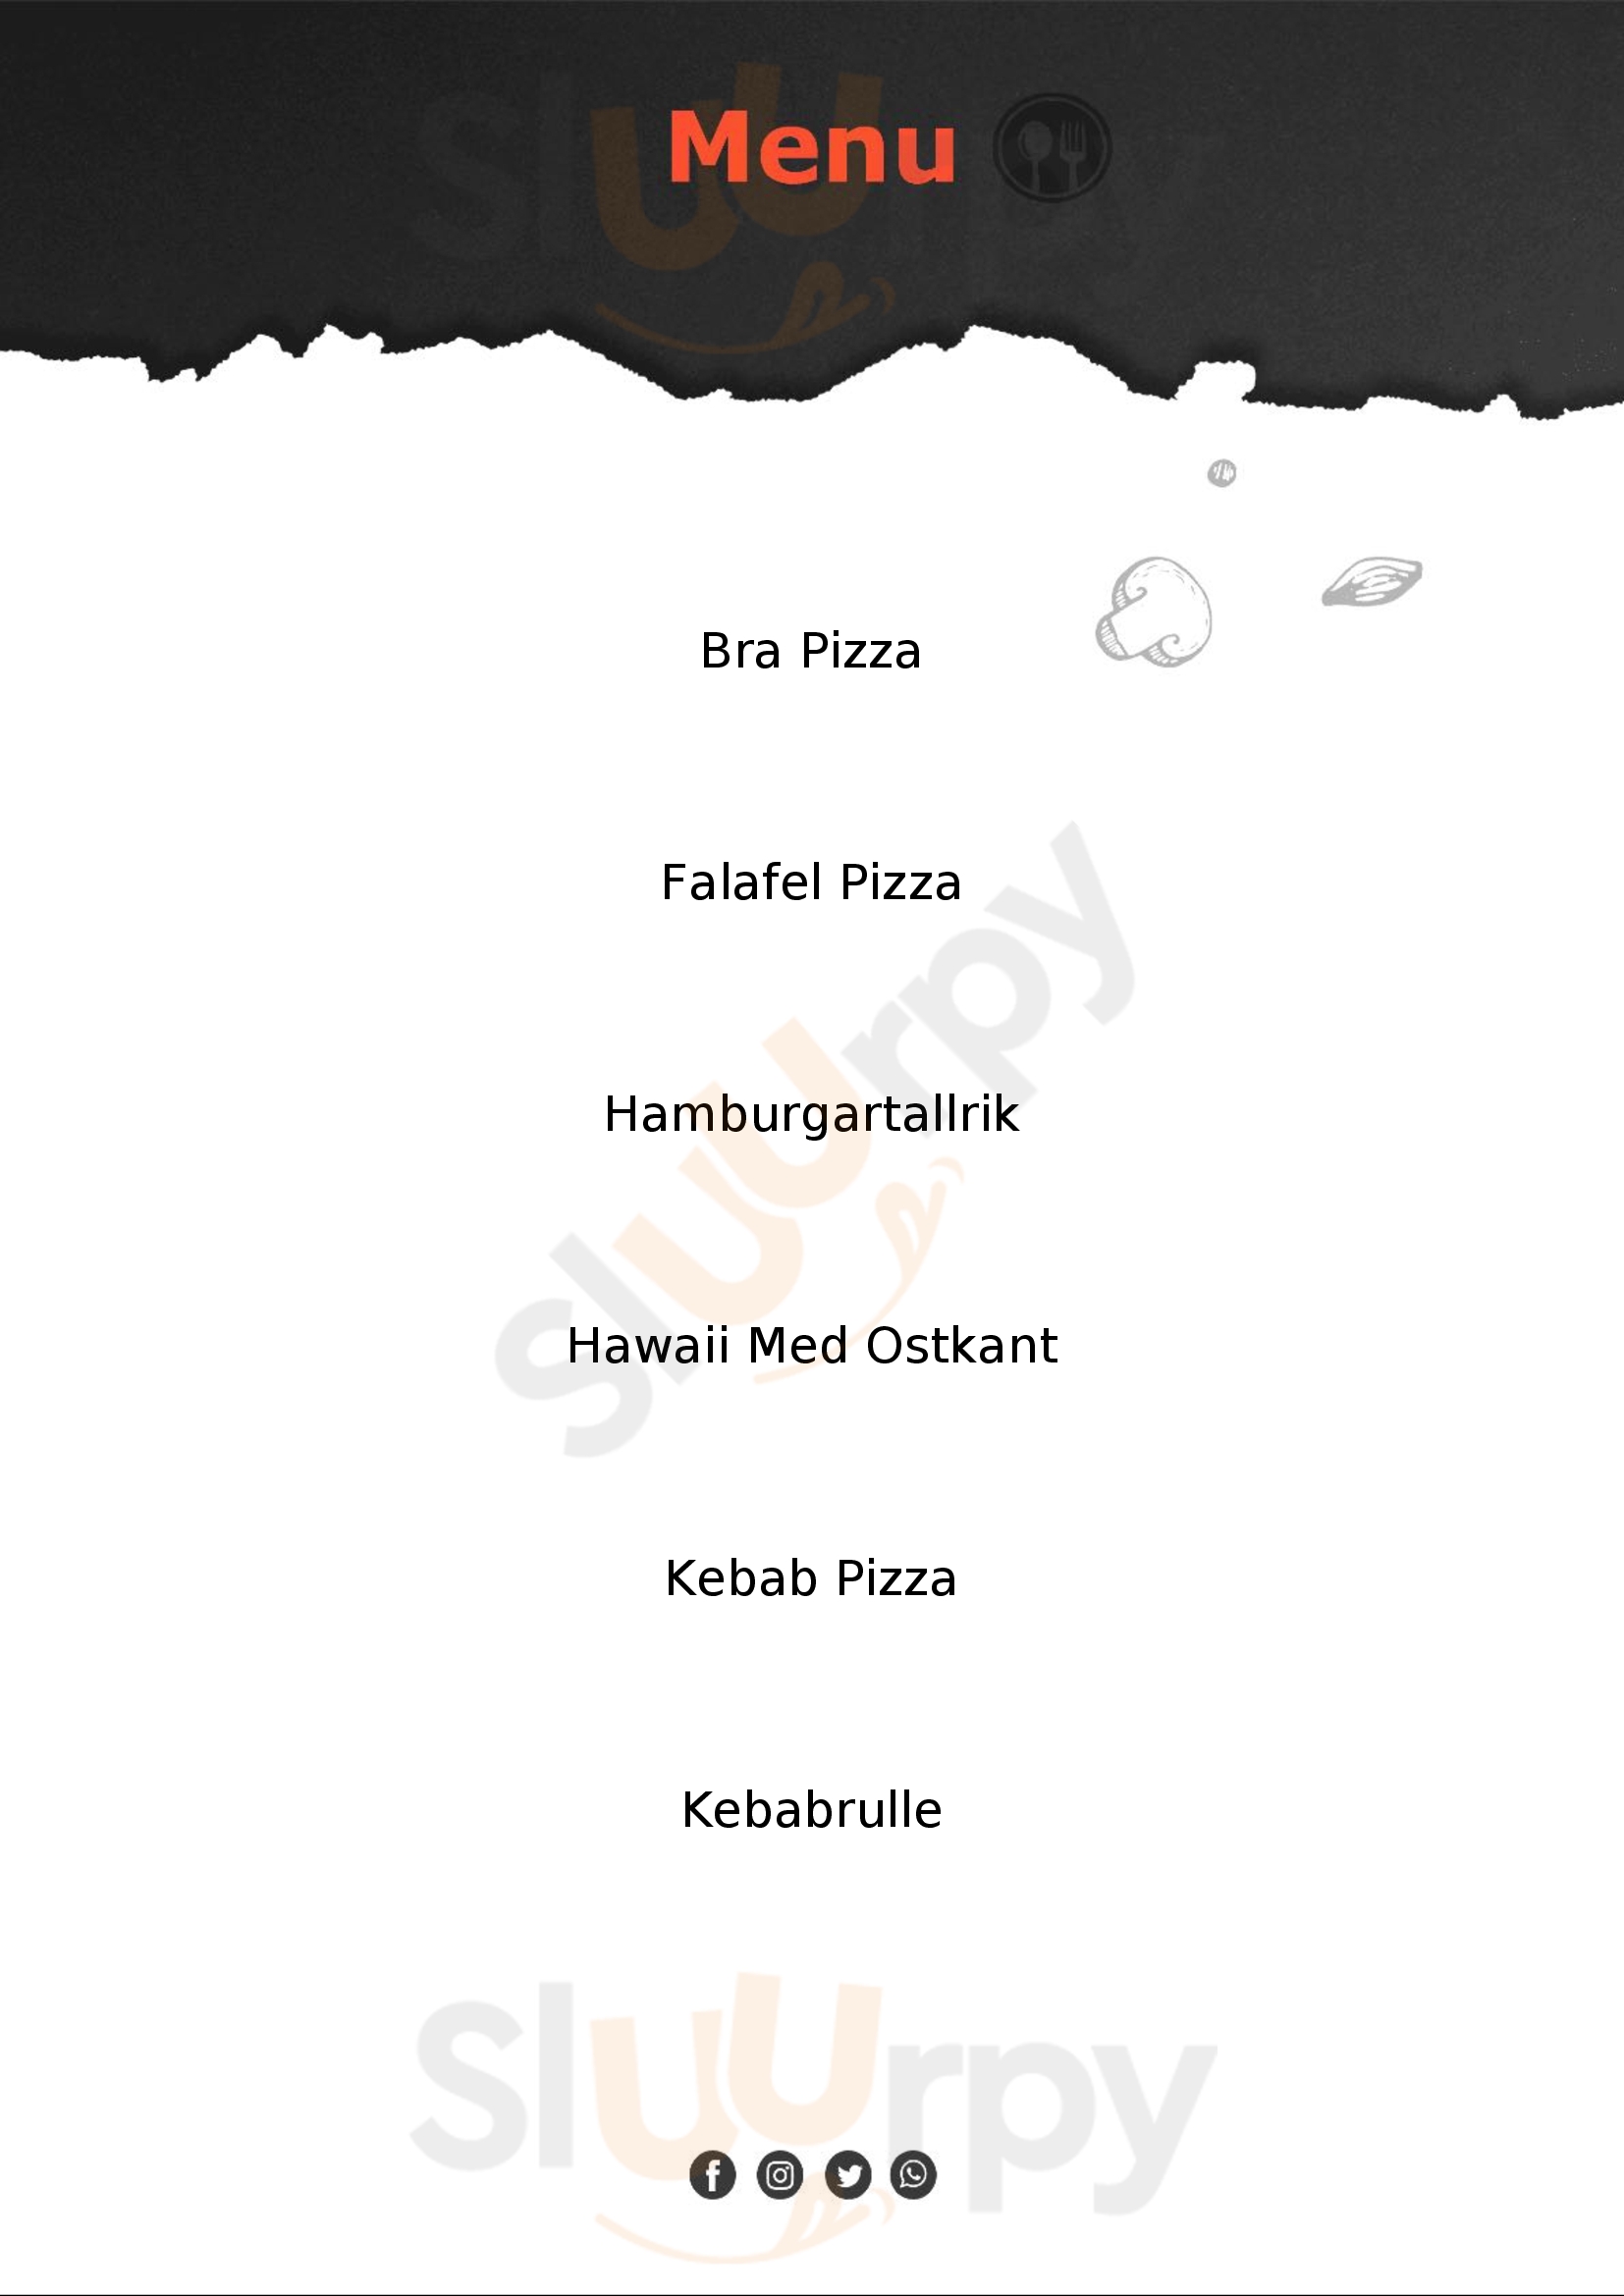 Kebabnekajse Pizzeria Umeå Menu - 1